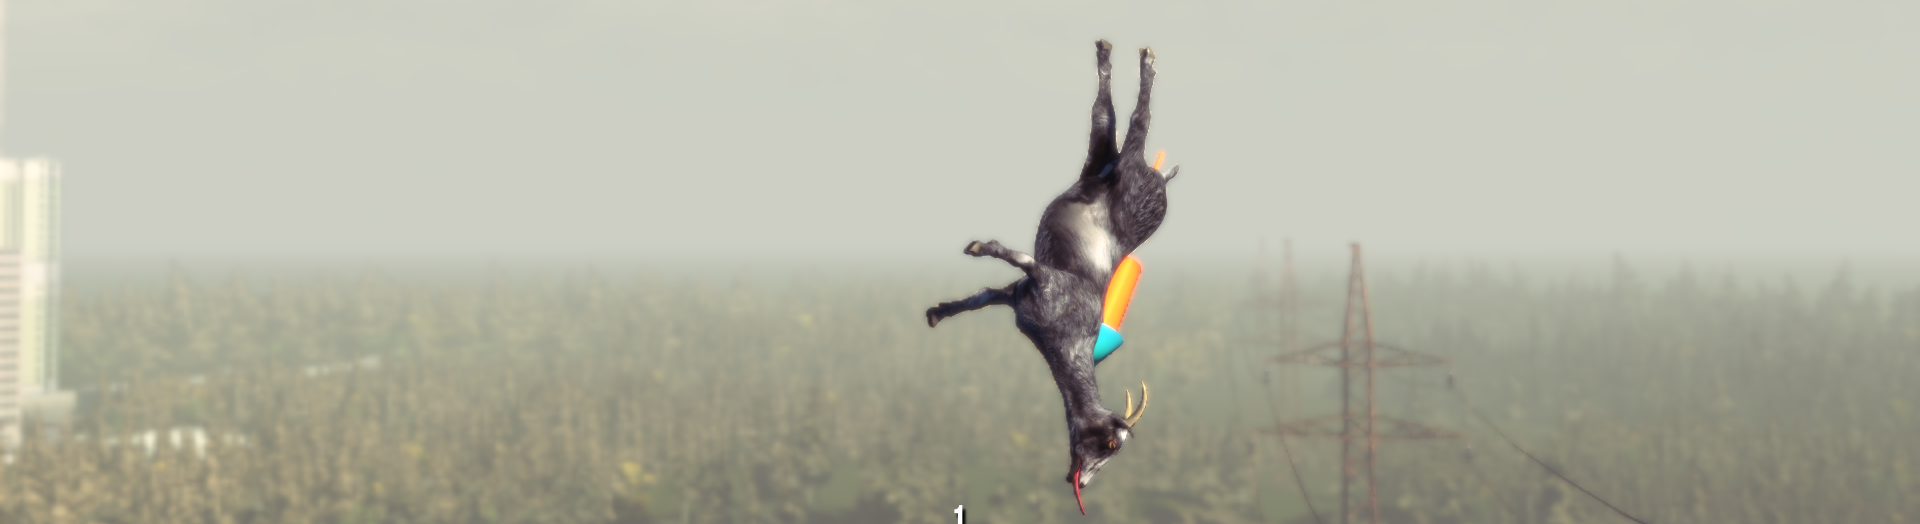 Flying Goat from Goat Sim Blank Meme Template